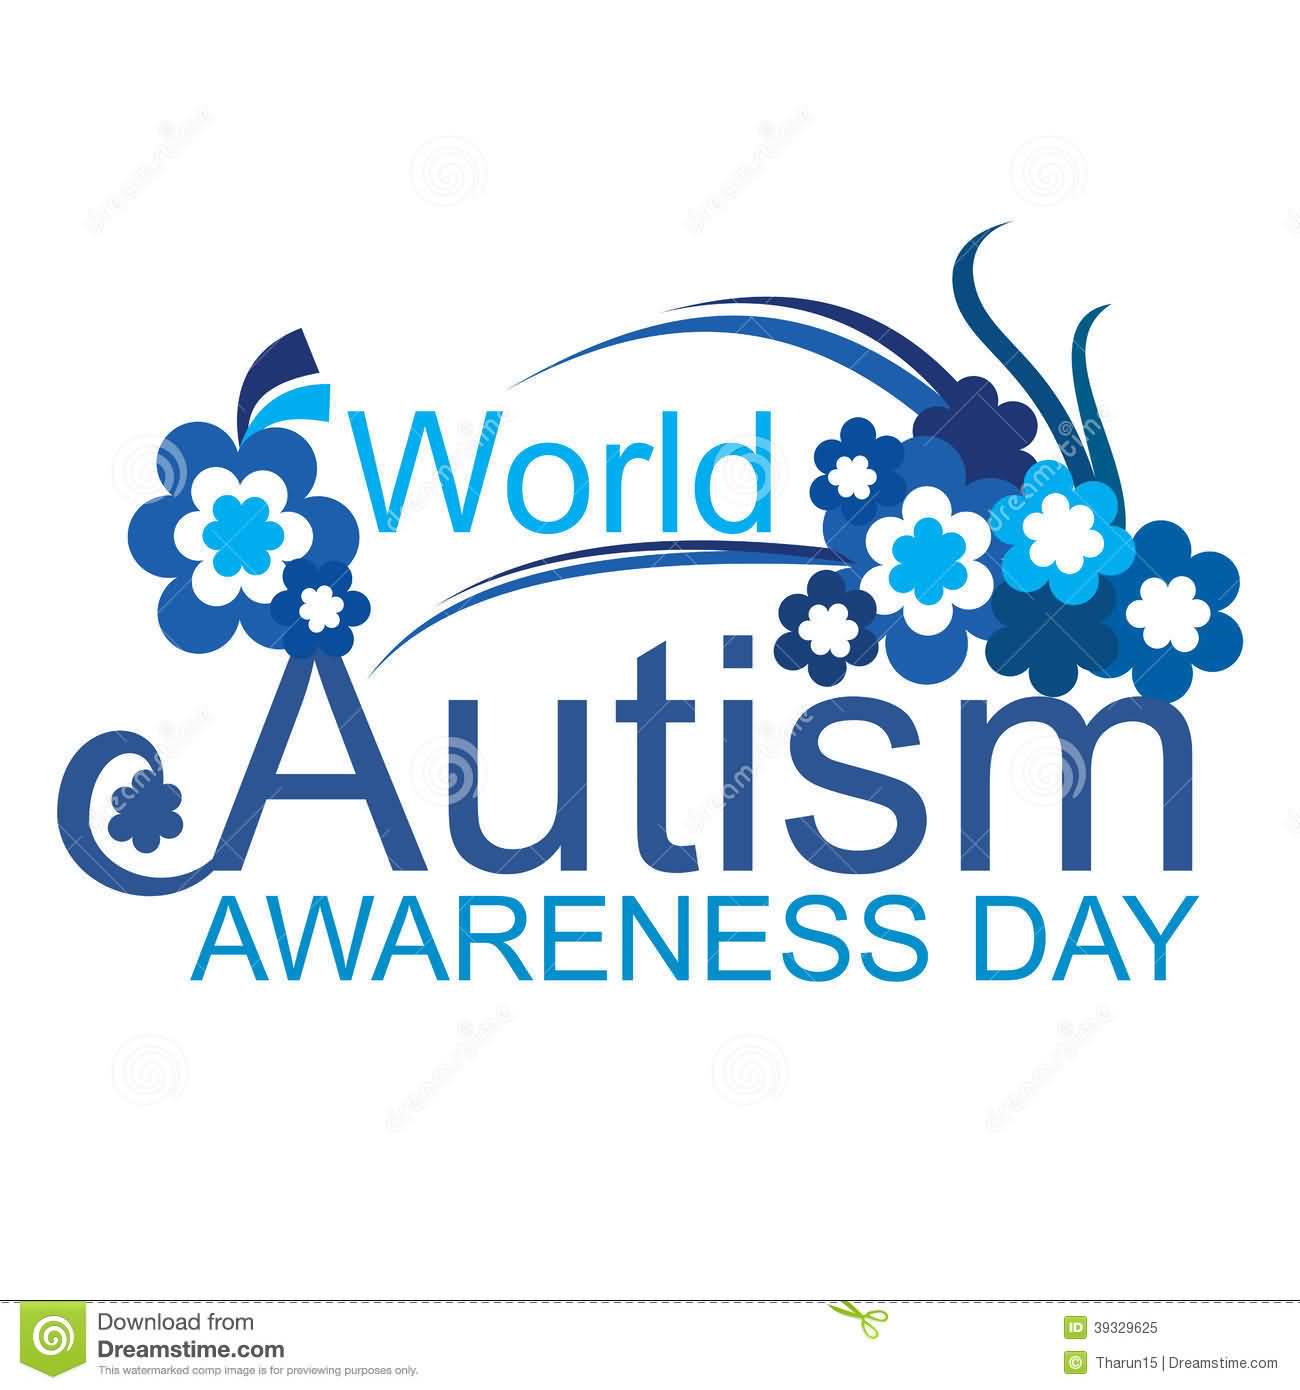 World Autism Awareness Day 2017 Card